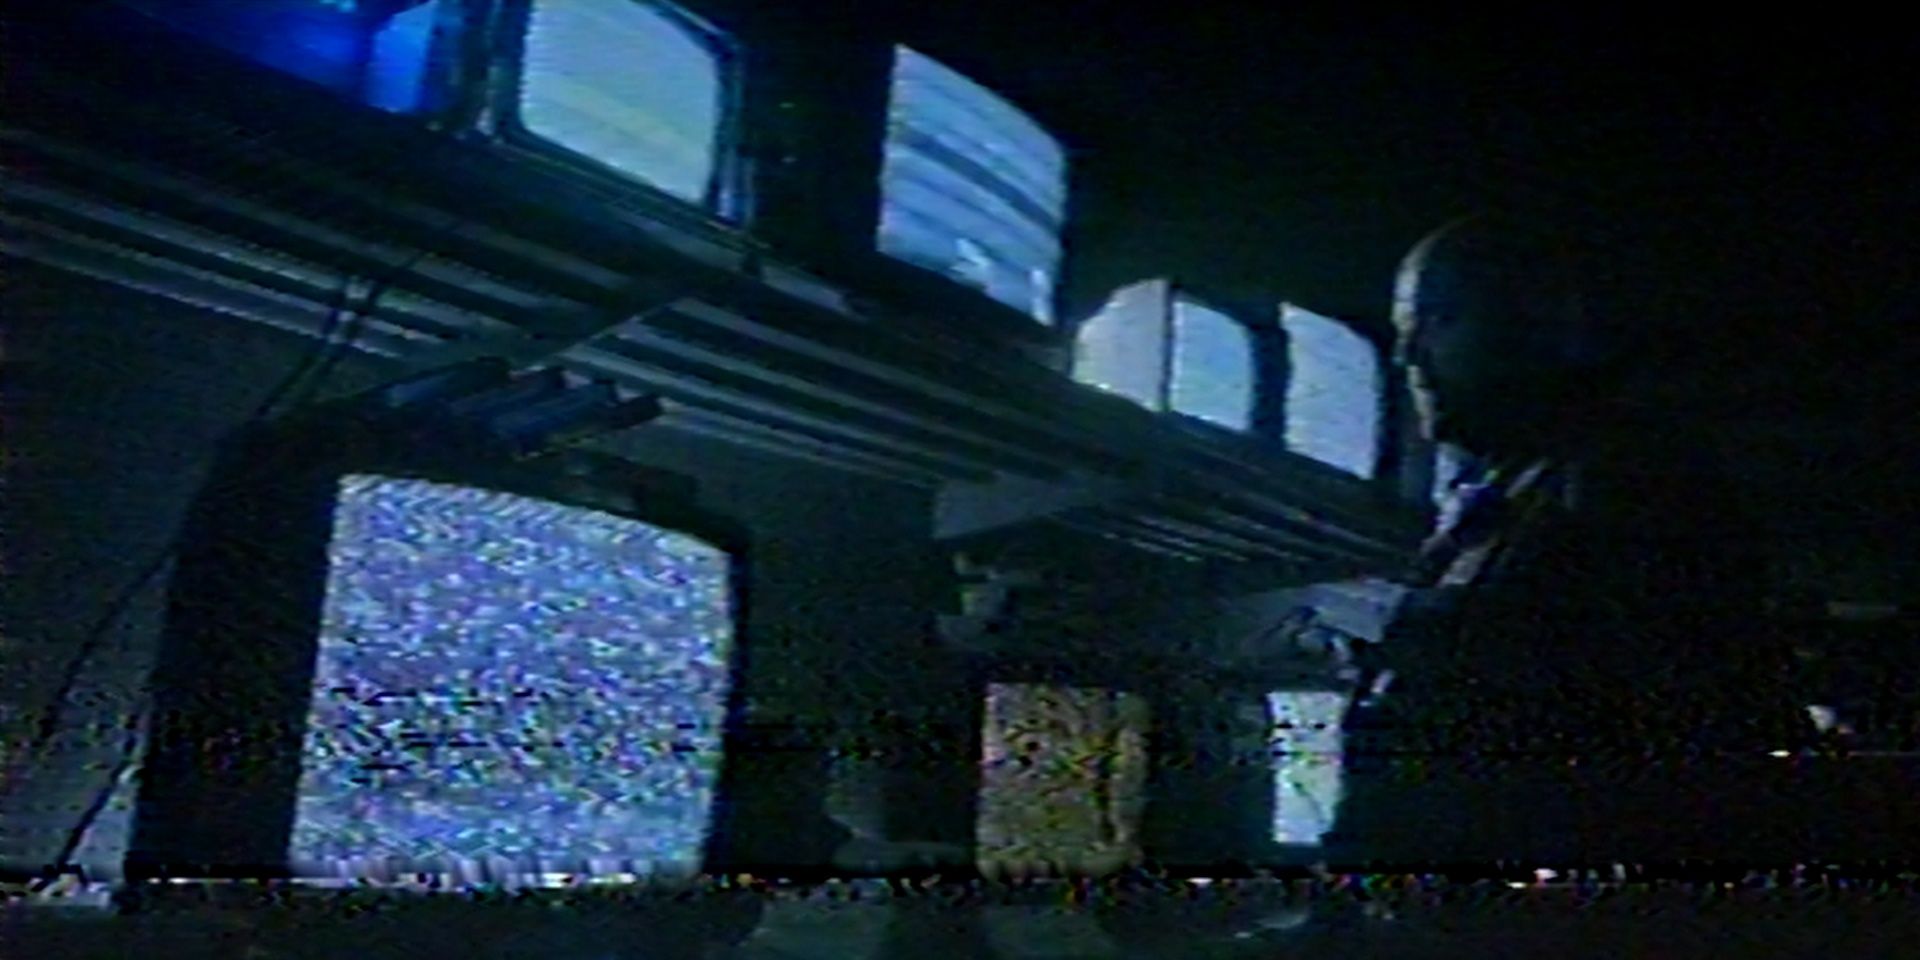 Intimidating TVs blare static in V/H/S/94